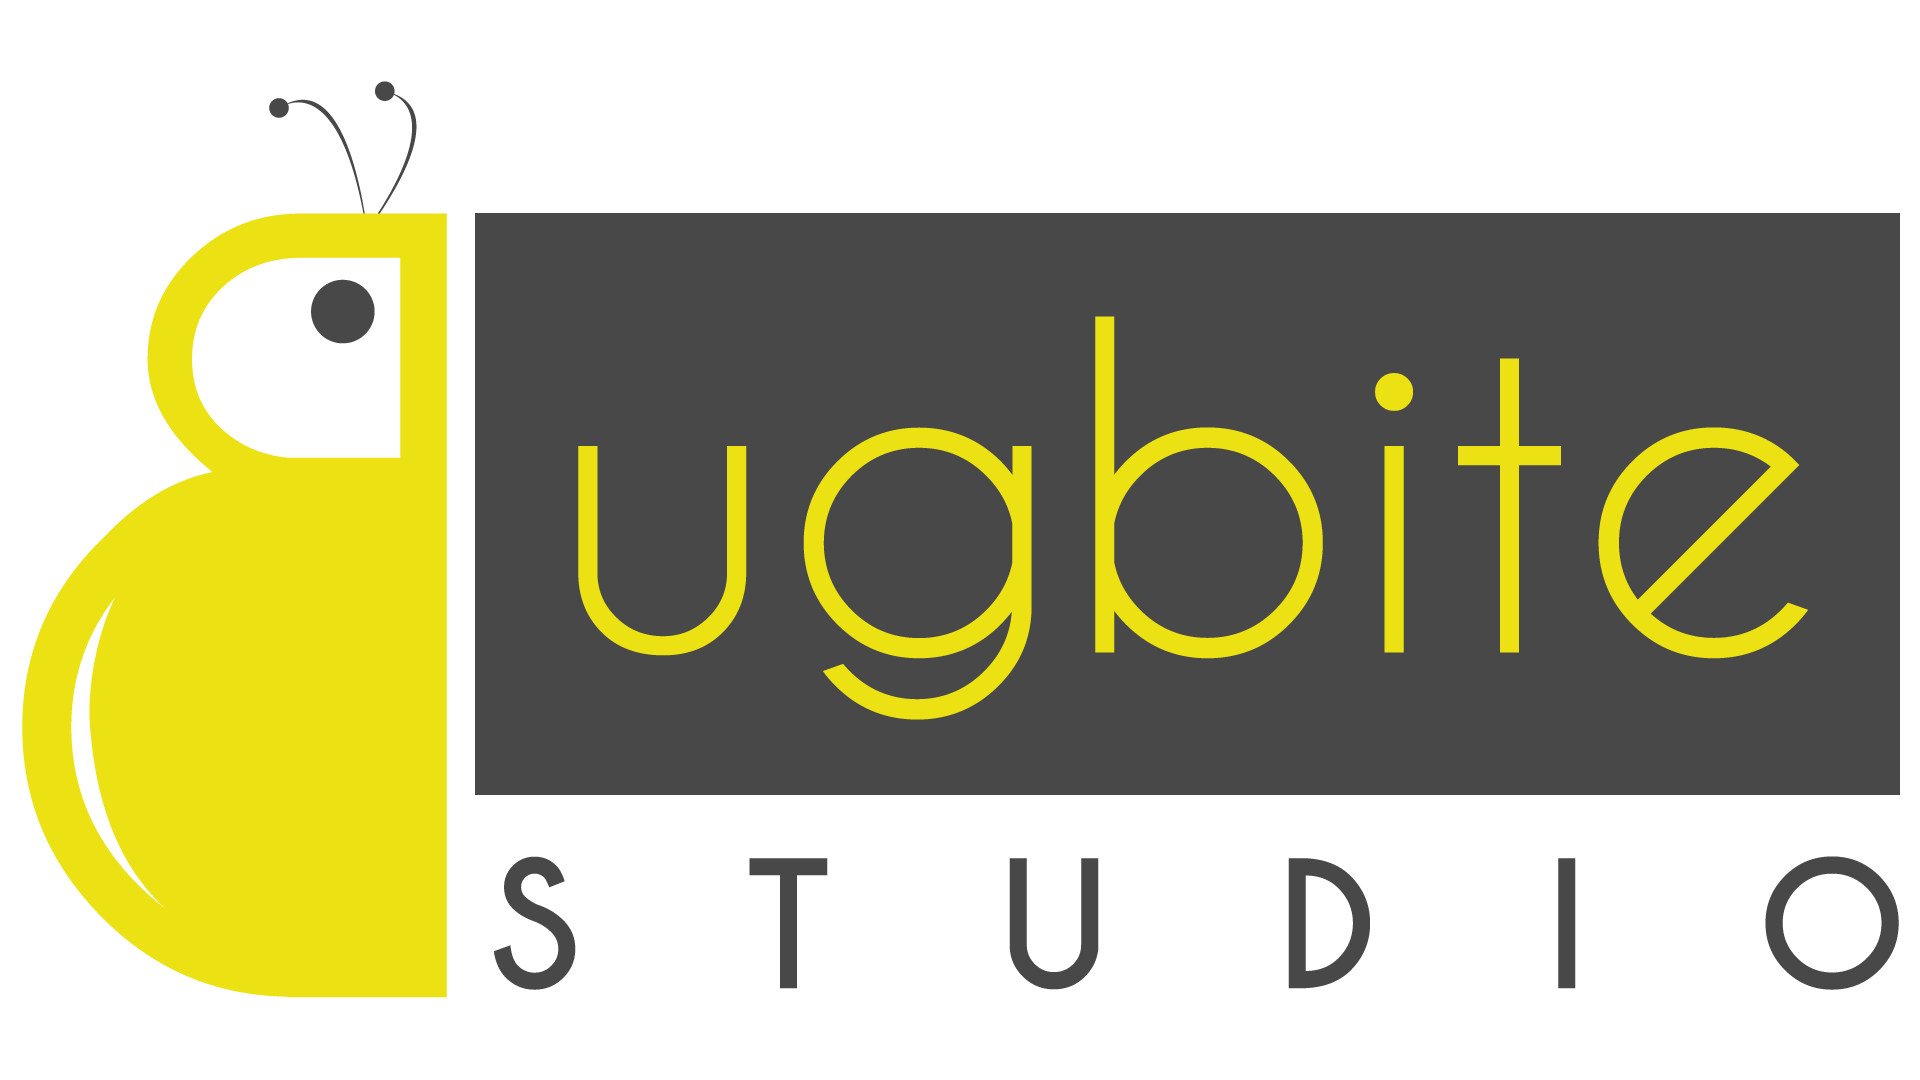 Bugbite Studio